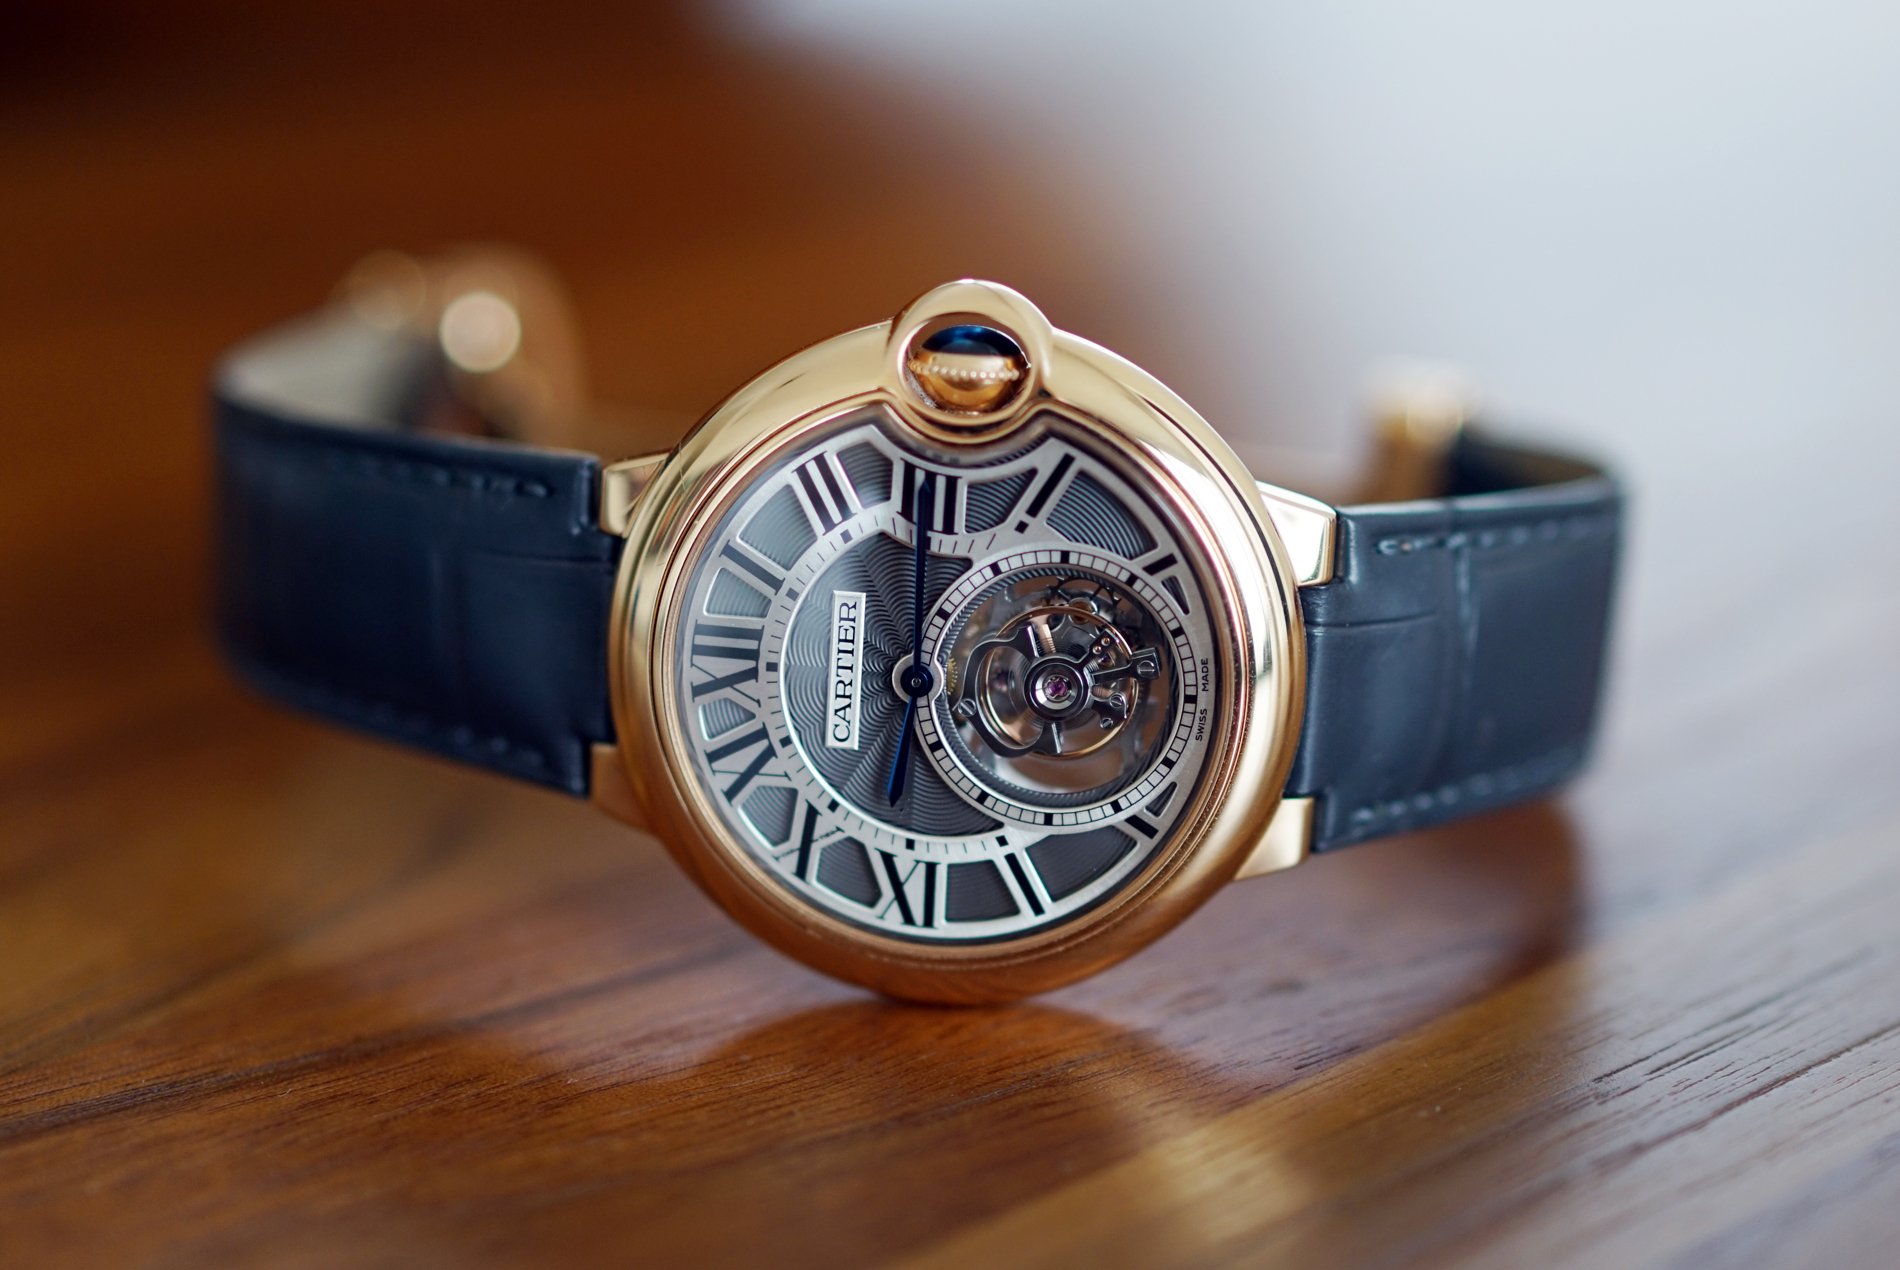 An Introduction to the Cartier Ballon Bleu Watch